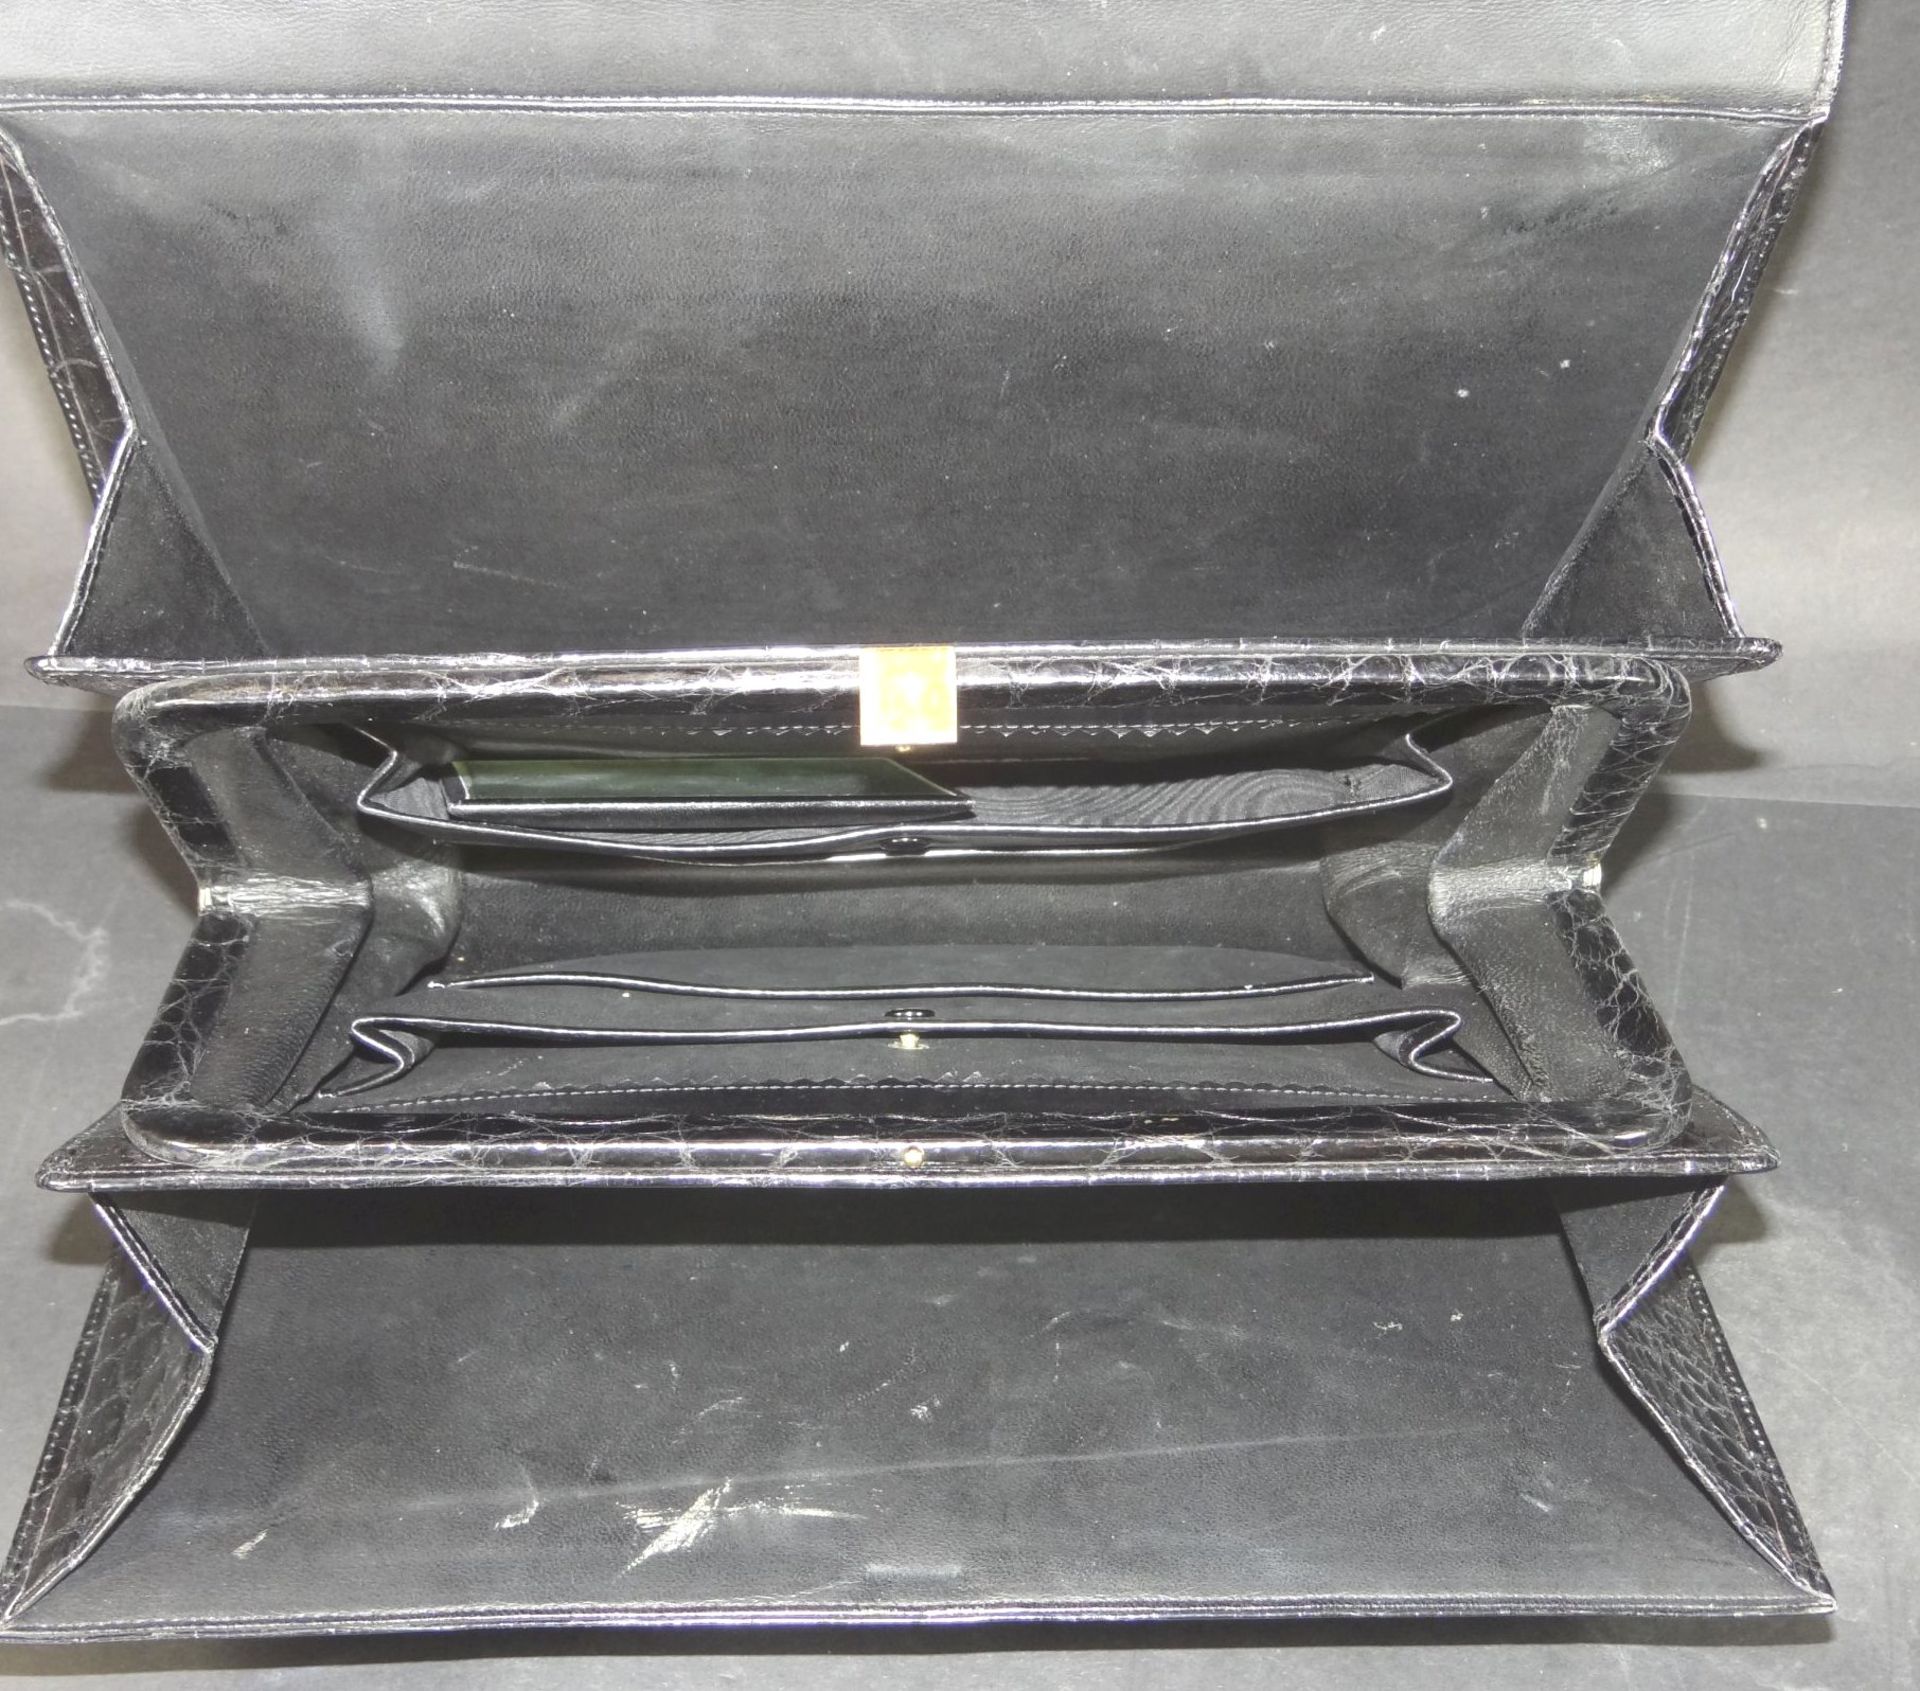 Krokoleder-Handtasche, schwarz, 21x31 cm - Bild 4 aus 4